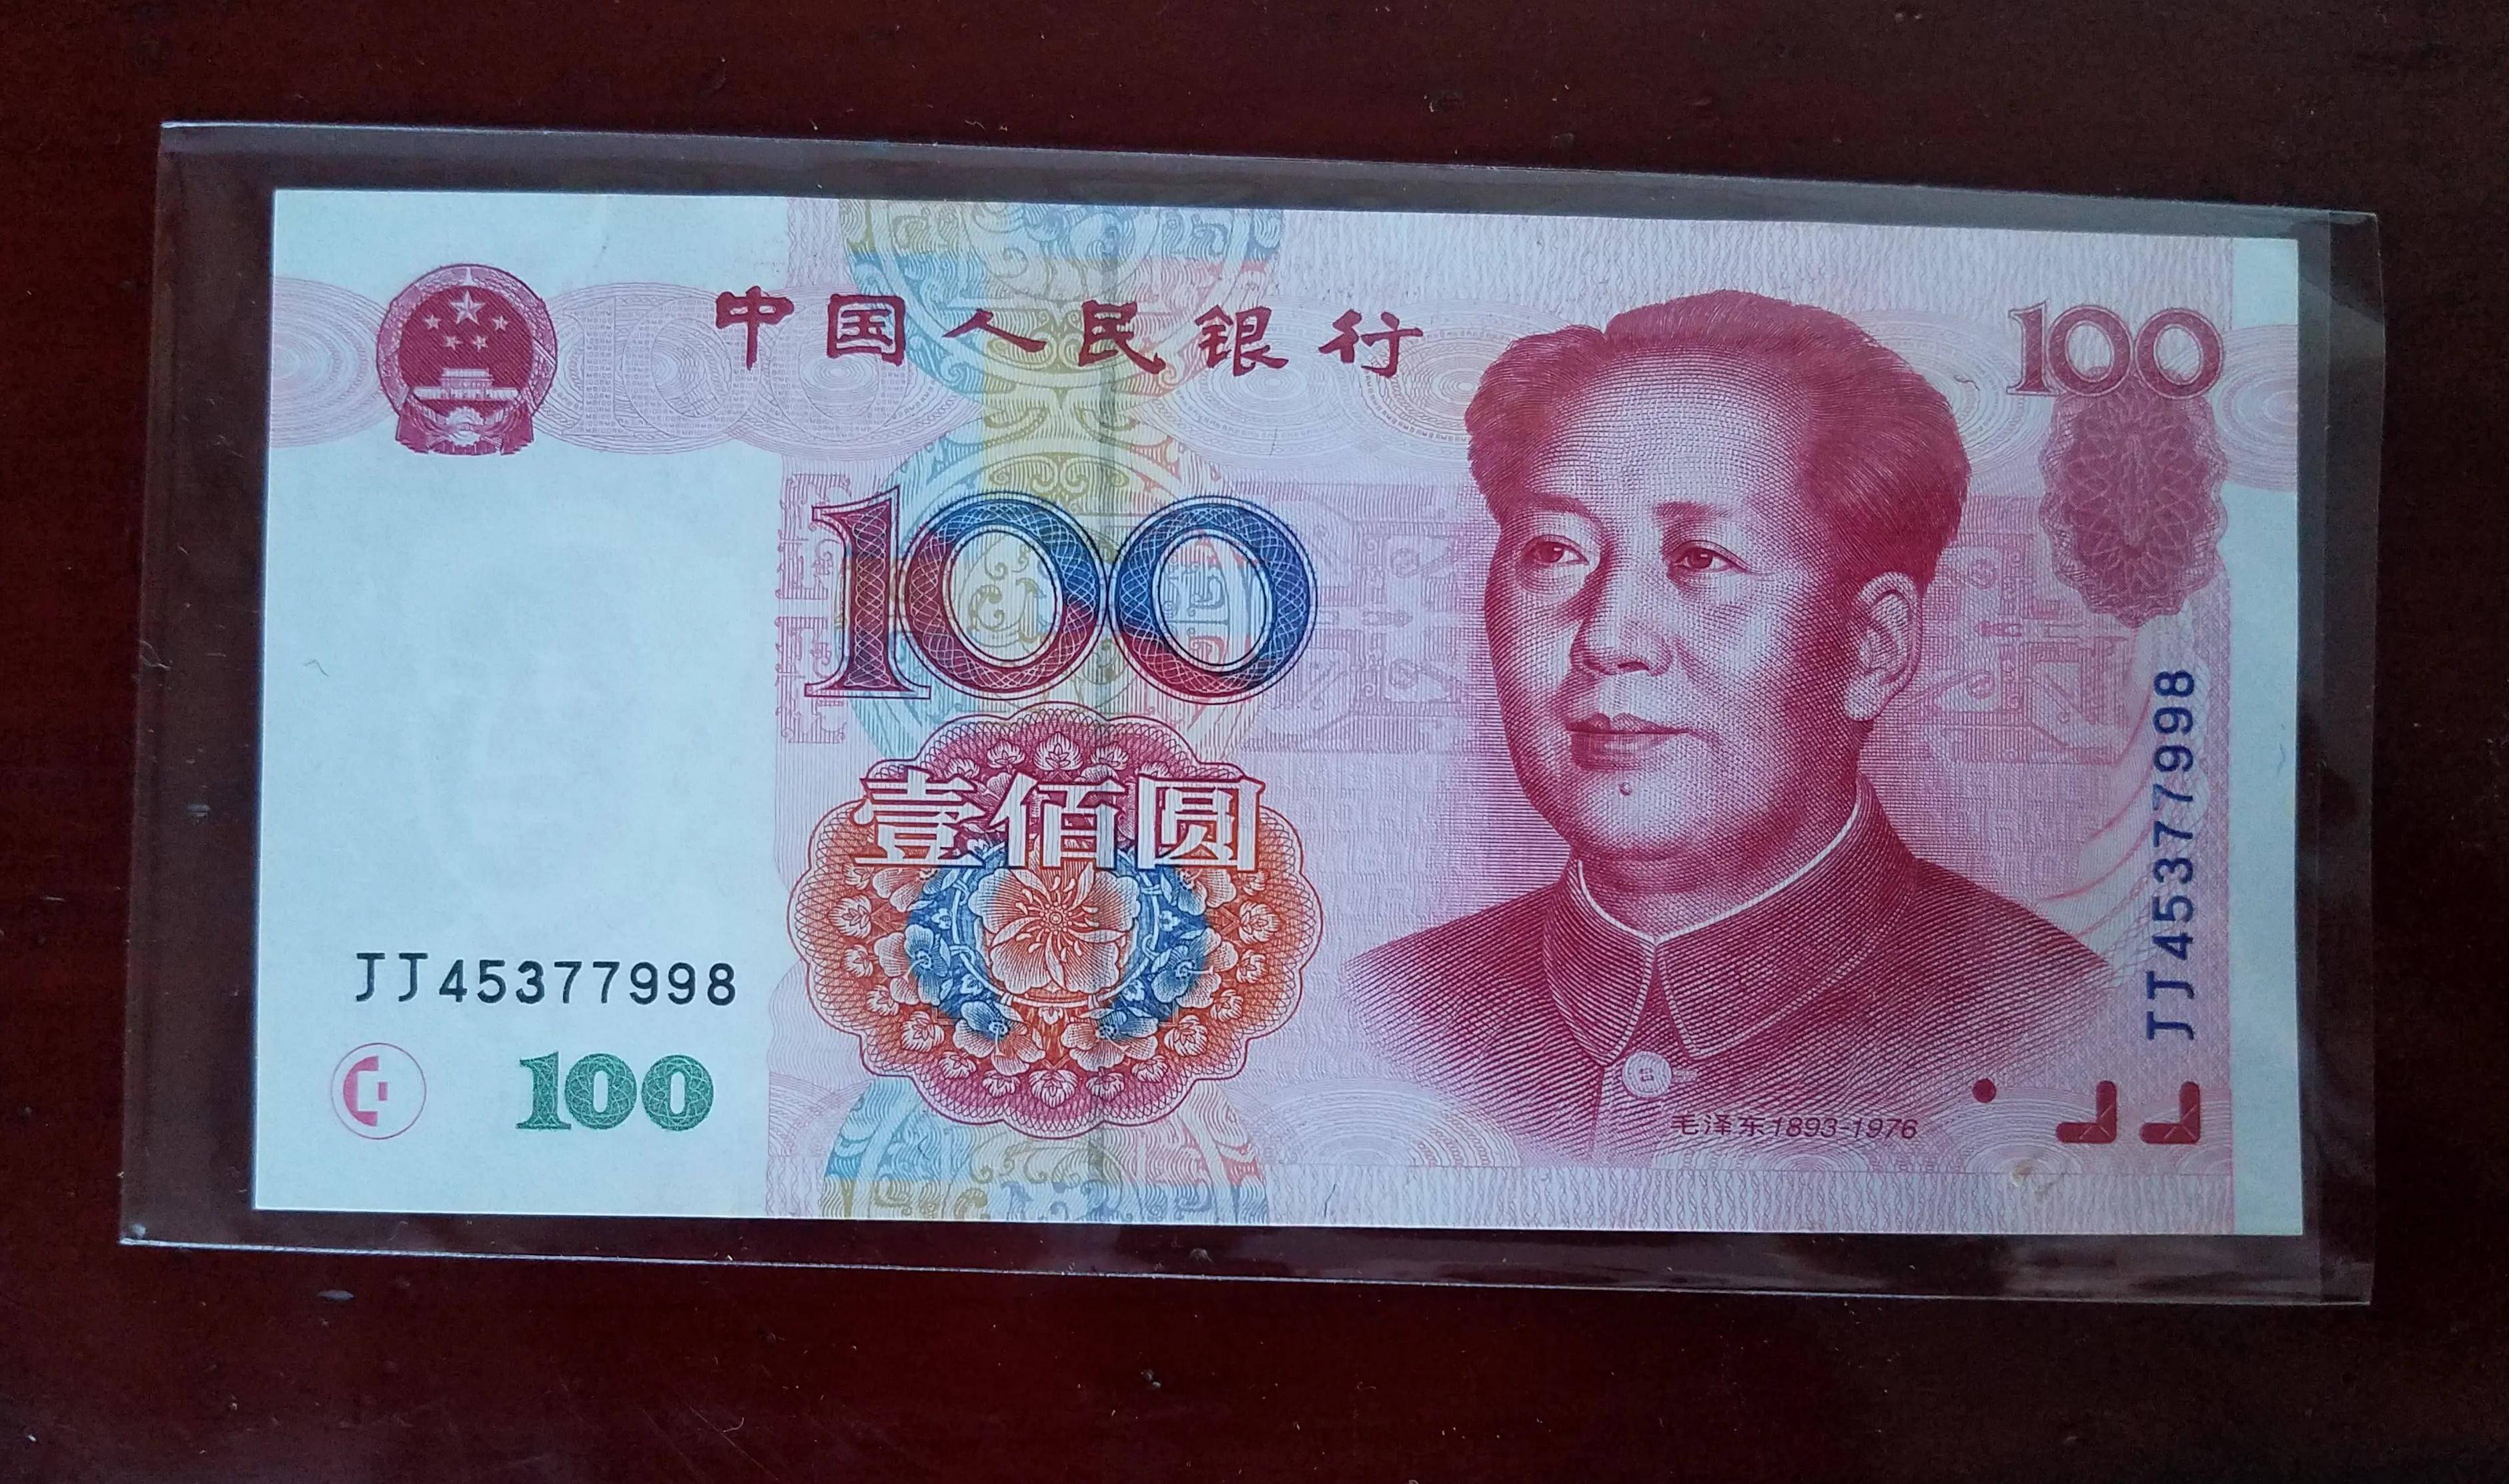 1999版100元钱的图片图片